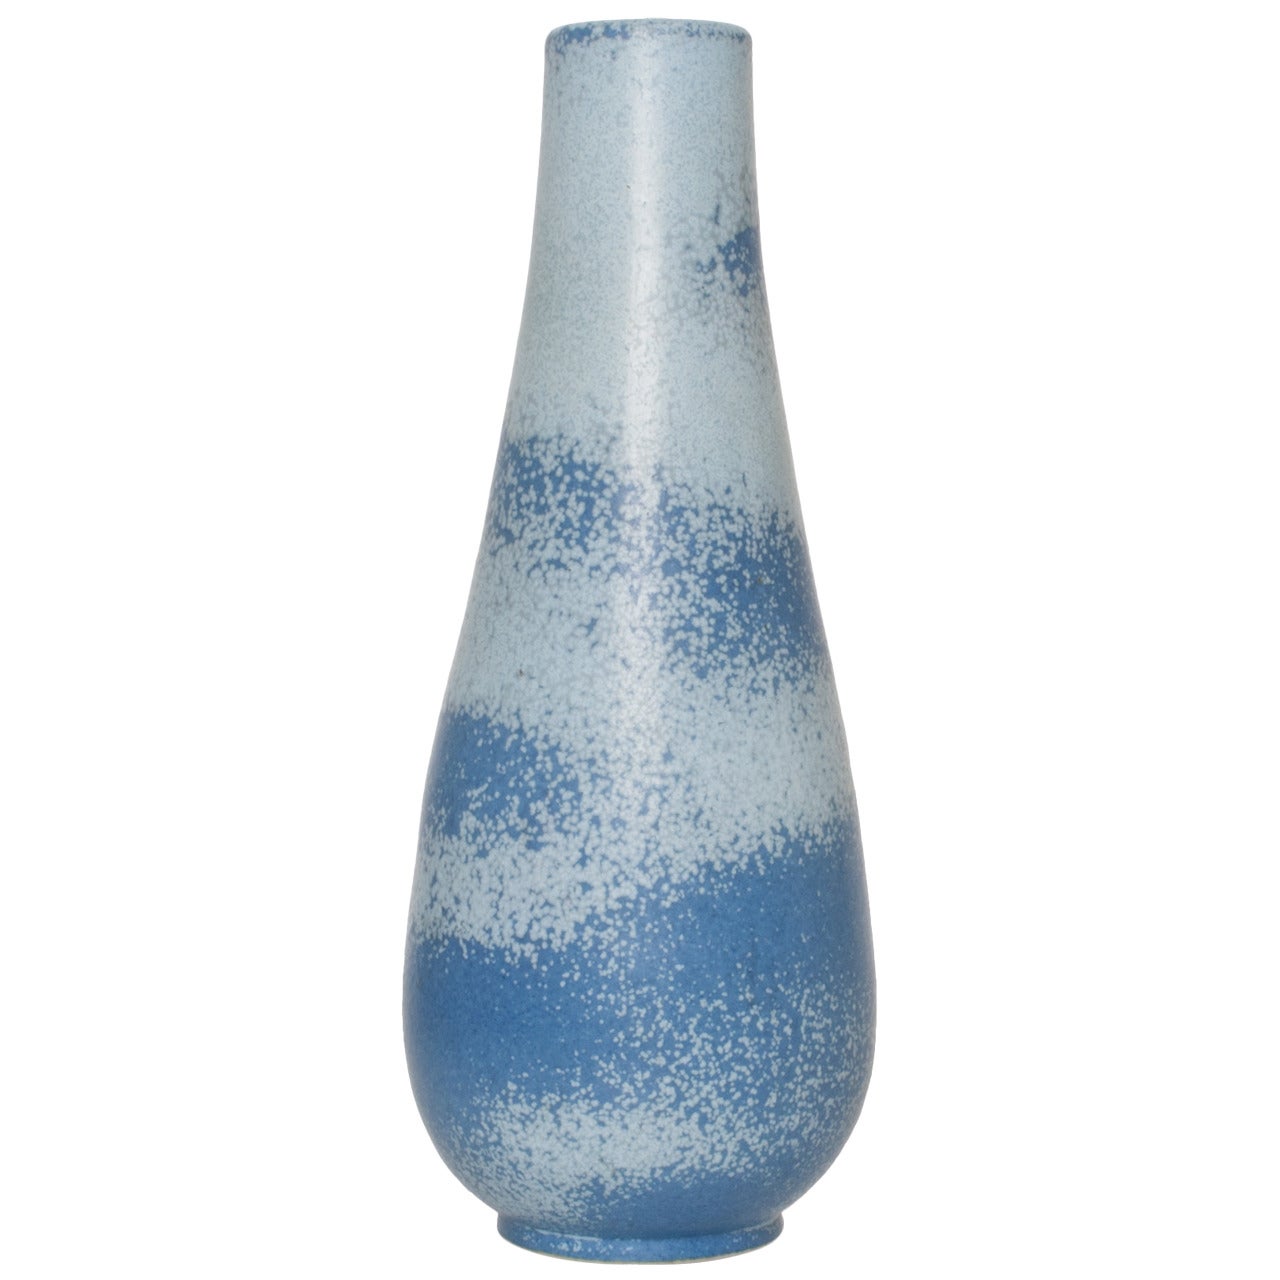 Scandinavian Modern Ceramic Vase in Light and Dark Blue by Gunnar Nylund